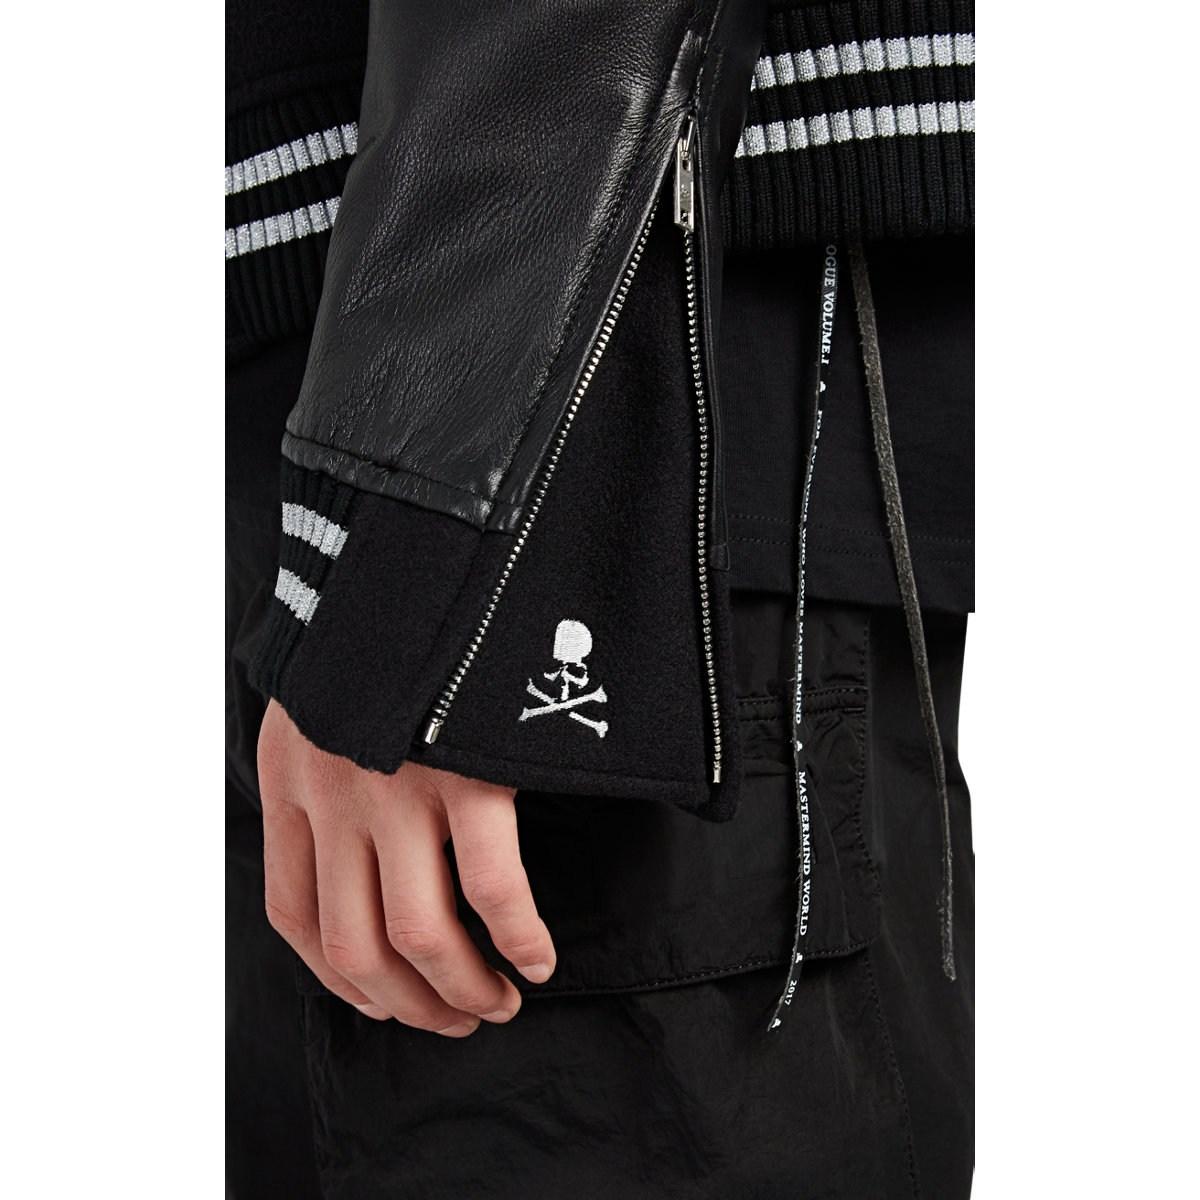 Mastermind Japan Skull-detailed Cashmere & Leather Varsity Jacket in Black for Men - Lyst